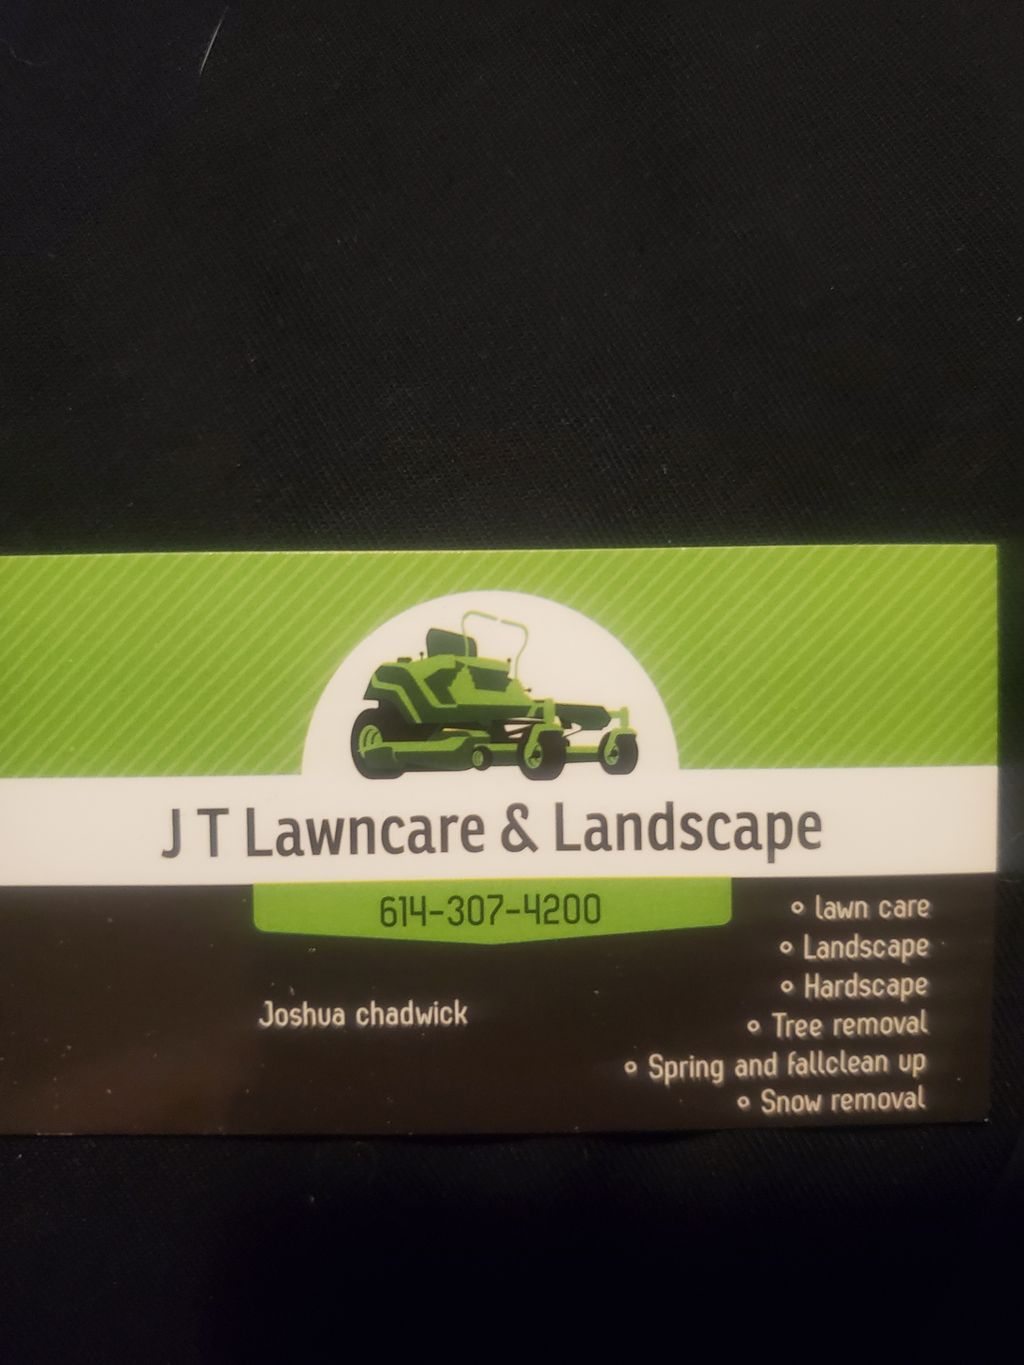 J T lawncare and landscape